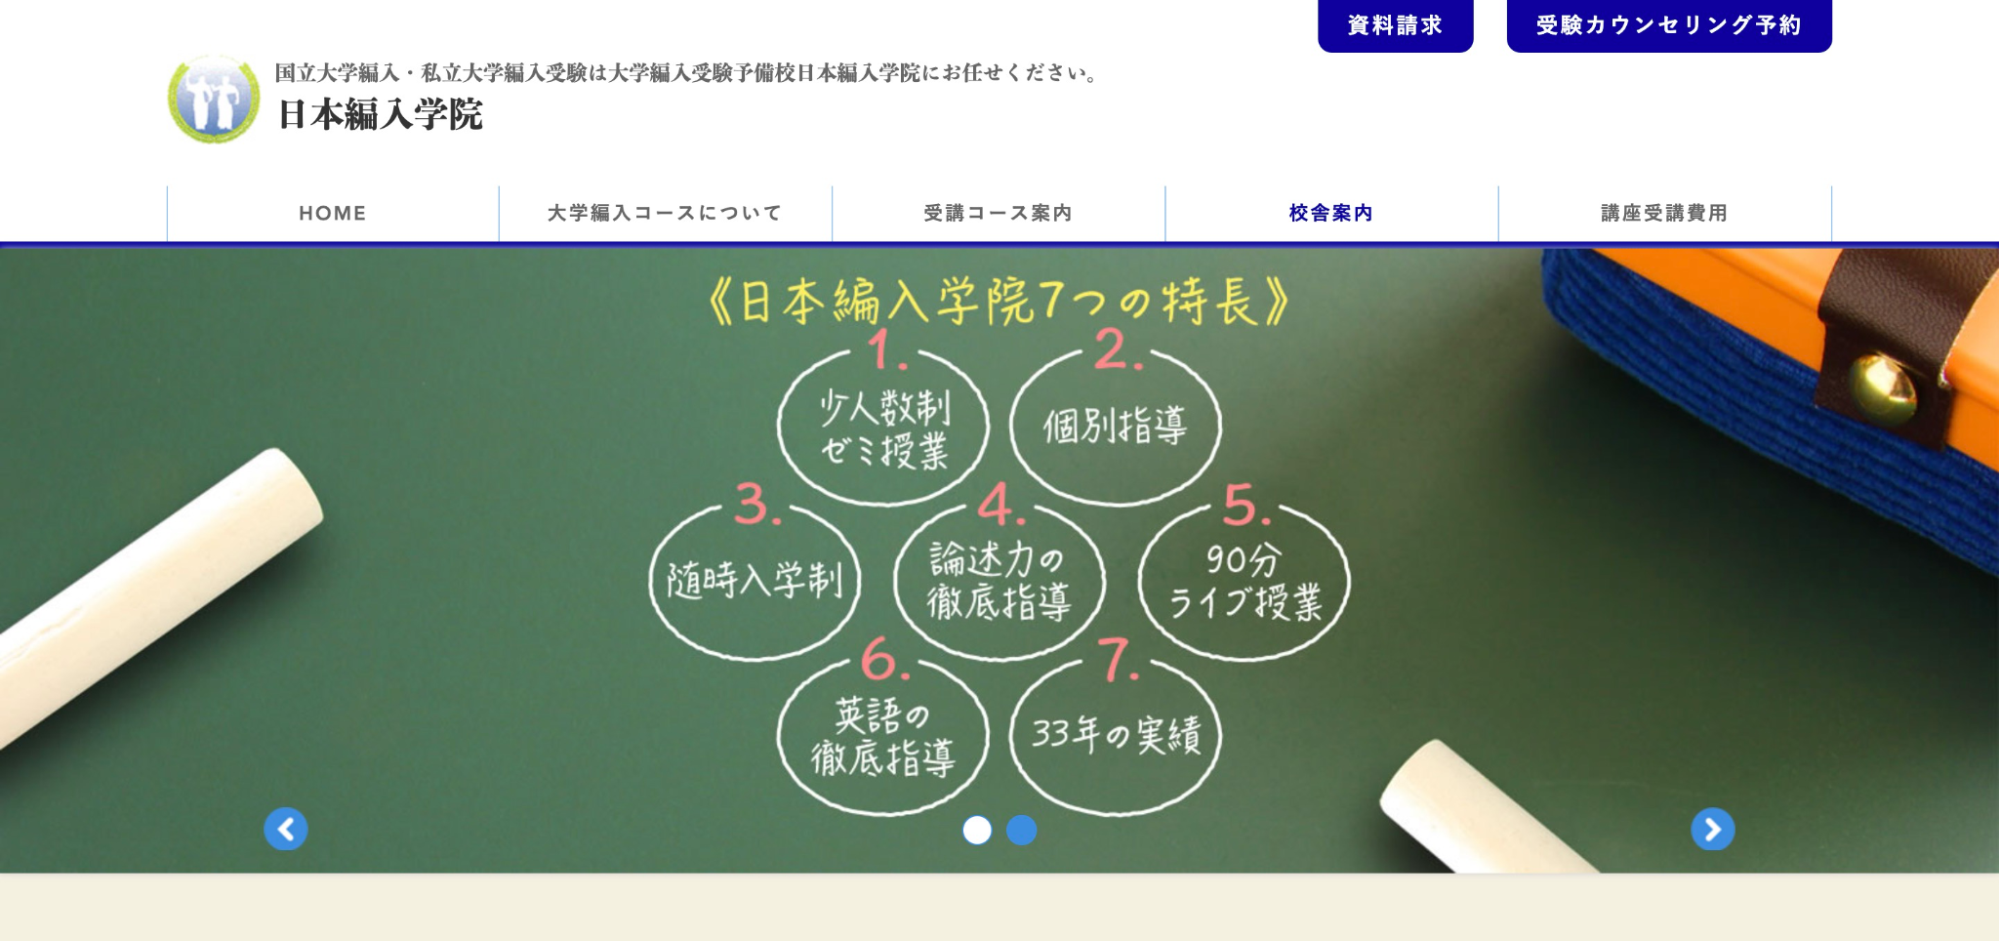 3.オンライン・オフラインで学べる「日本編入学院」
